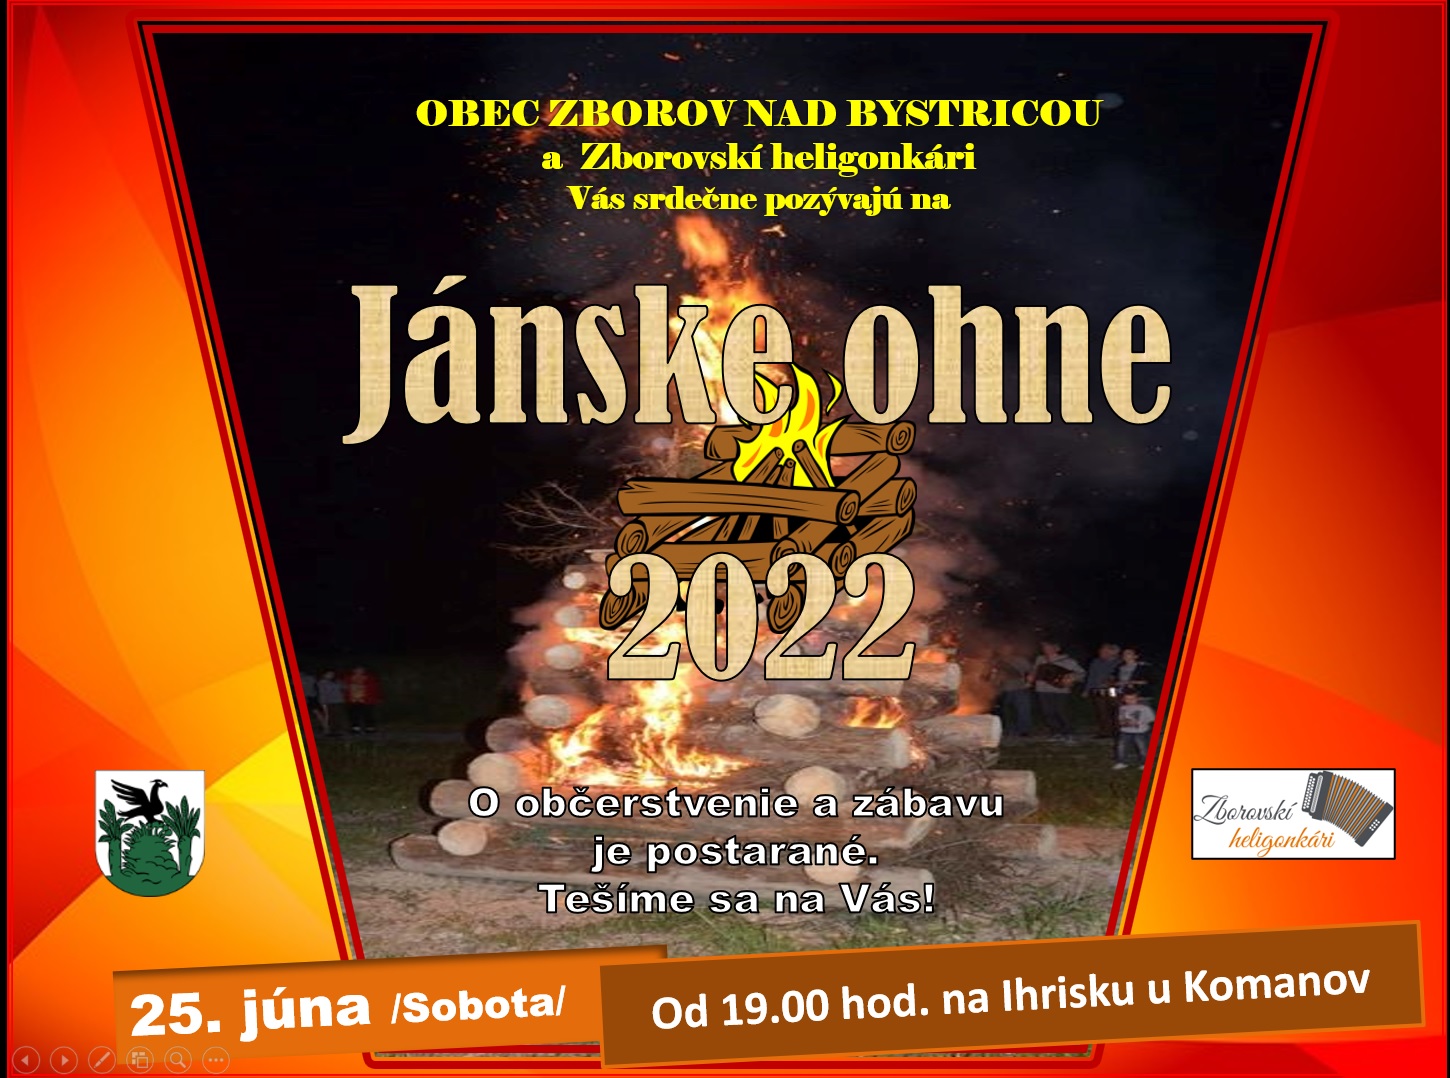 Jánske ohne 2022 Zborov nad Bystricou